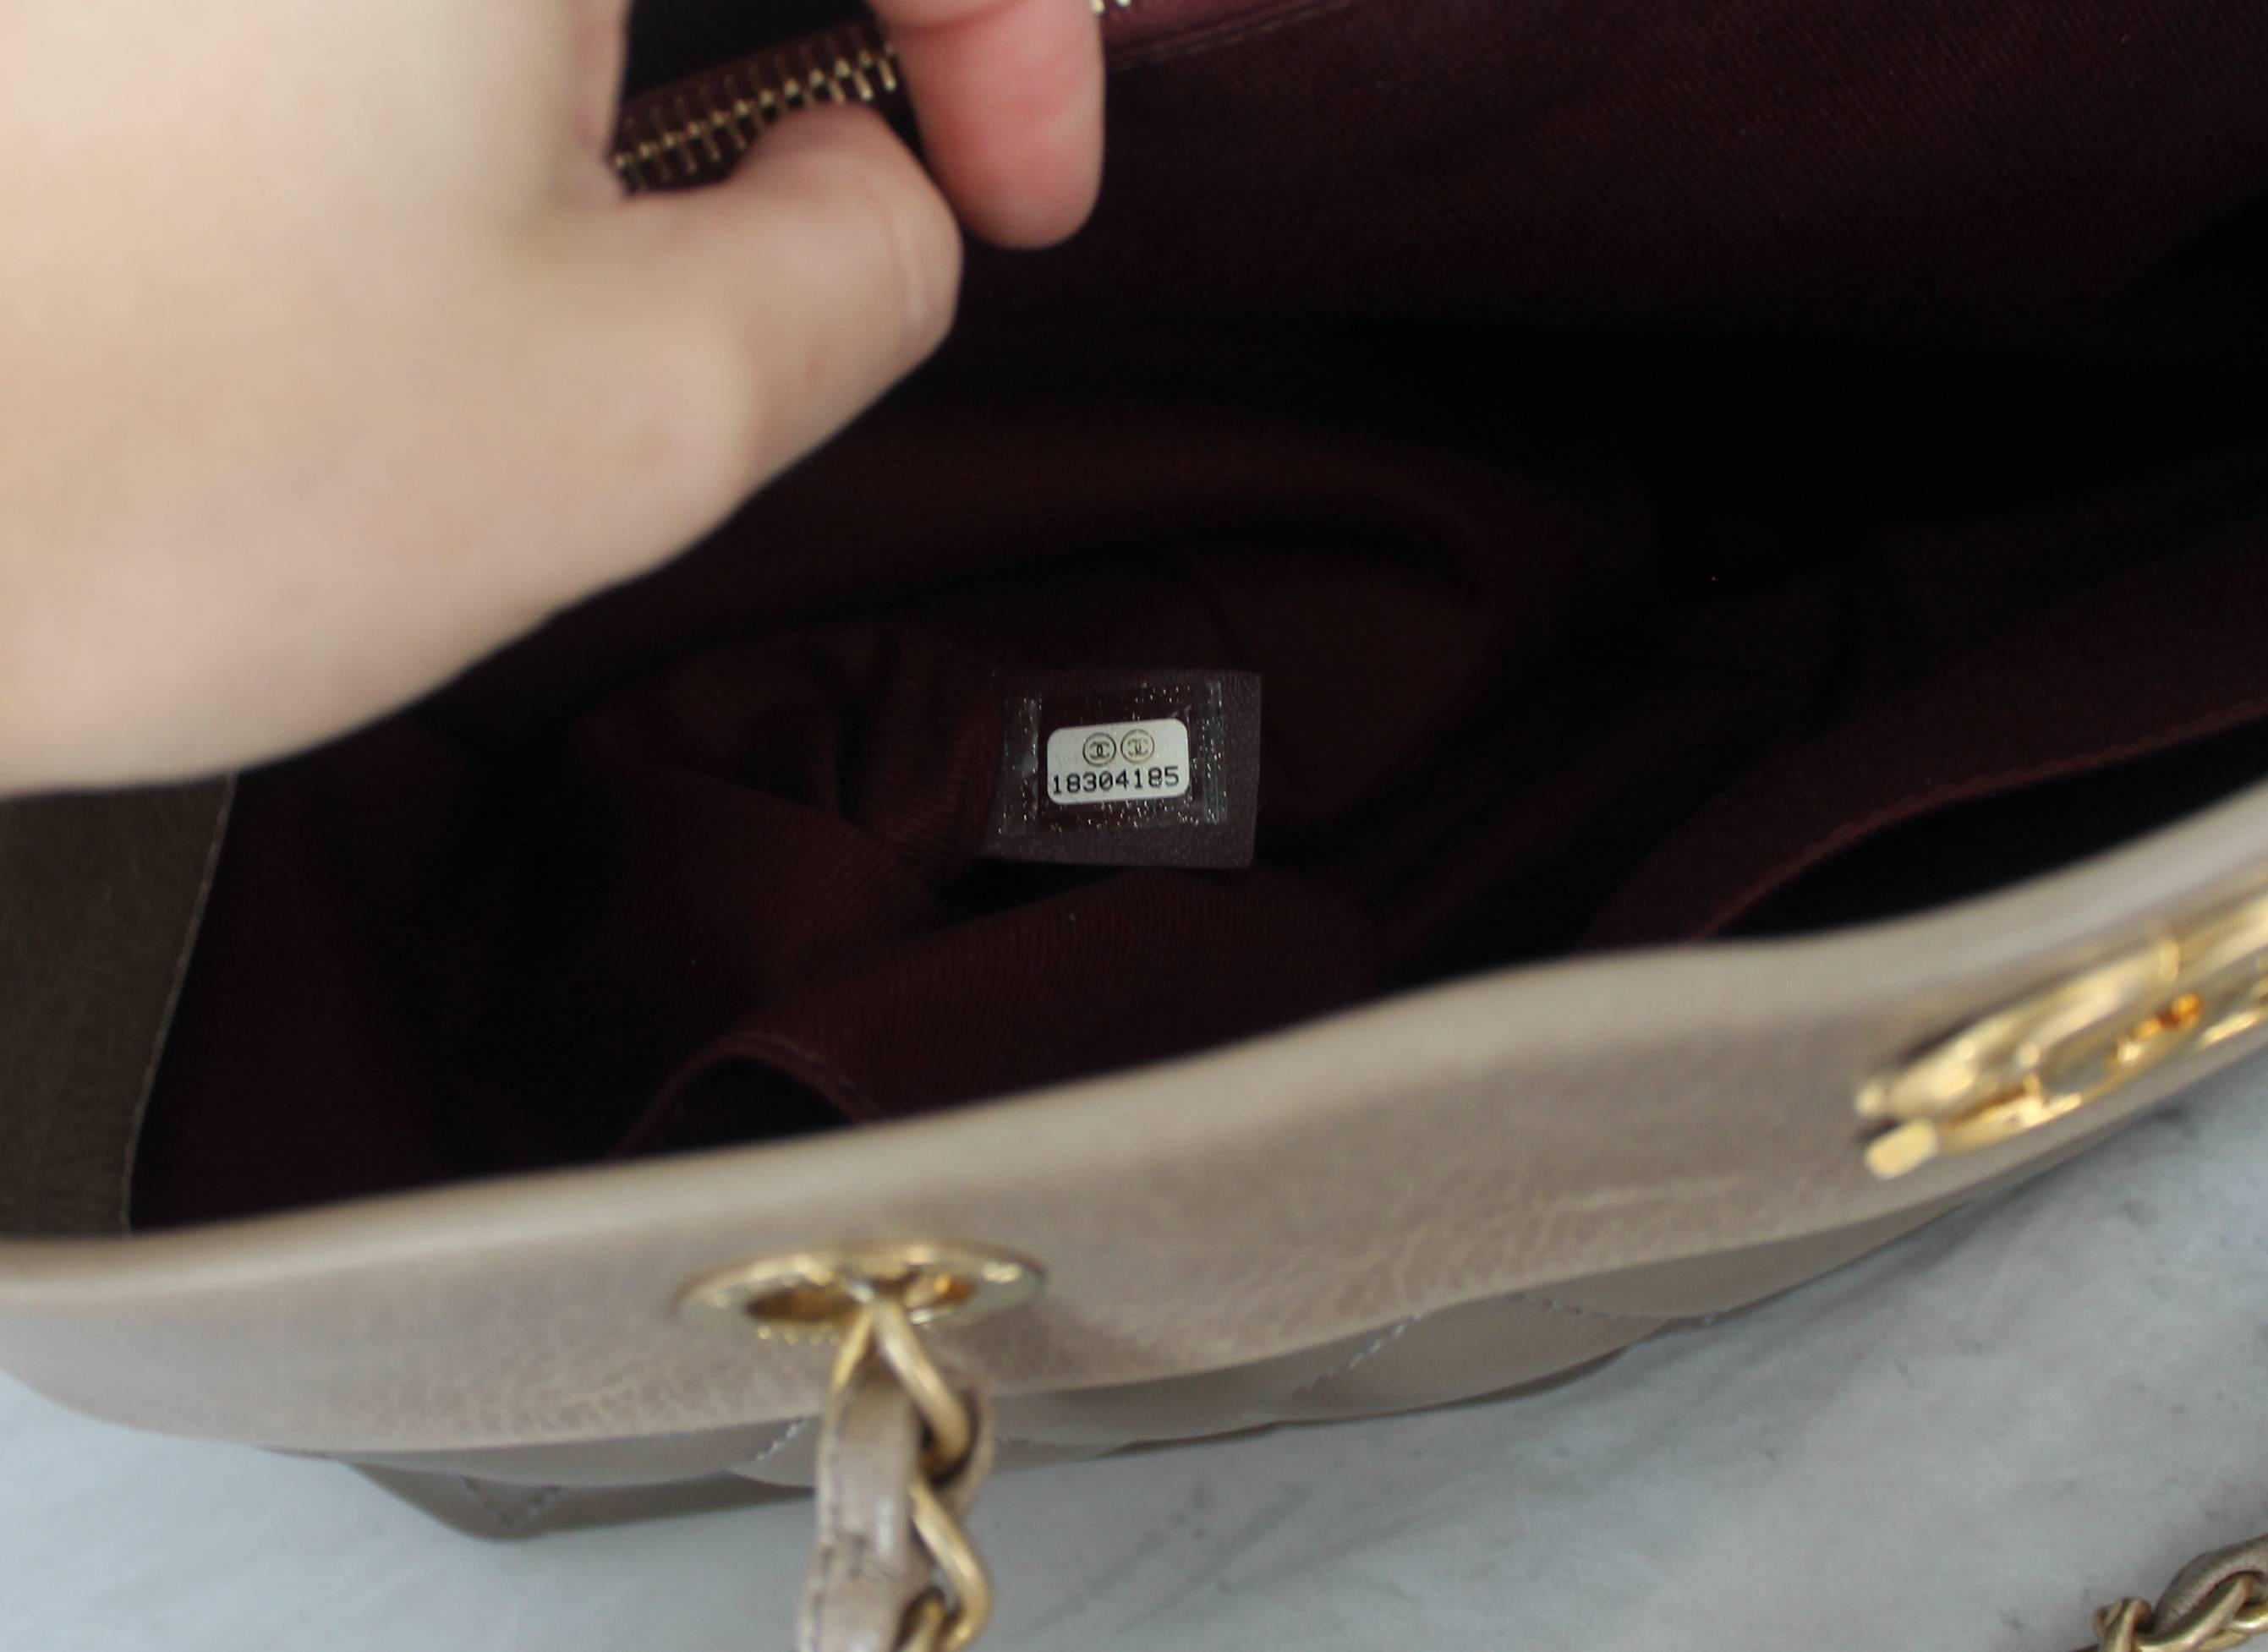 Chanel 2013 Taupe Soft Elegance Tote Shoulder Bag - GHW 3